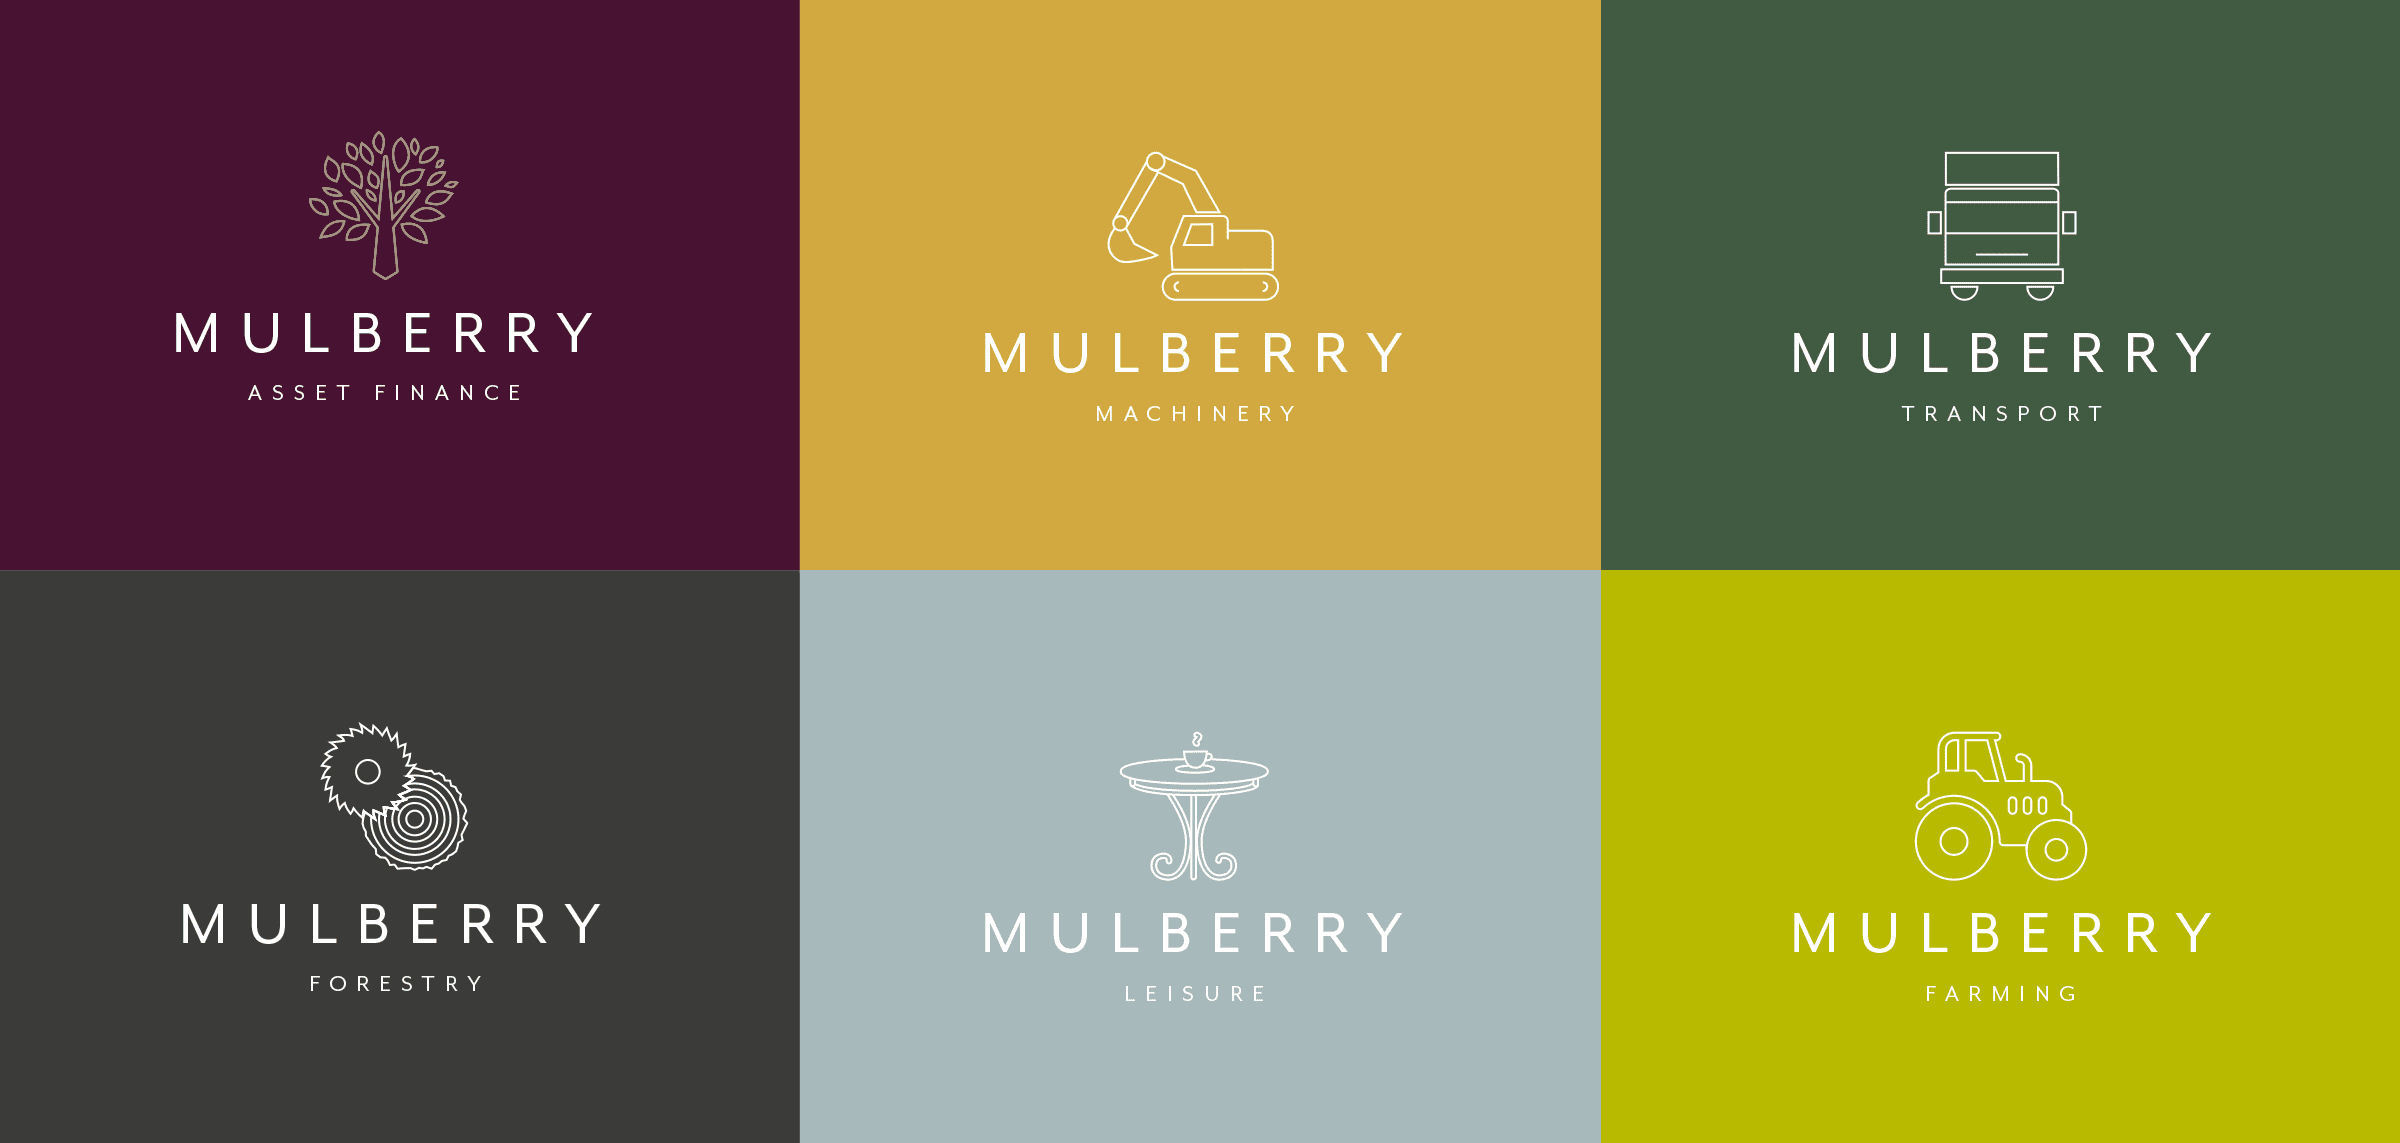 Mulberry Asset Finance